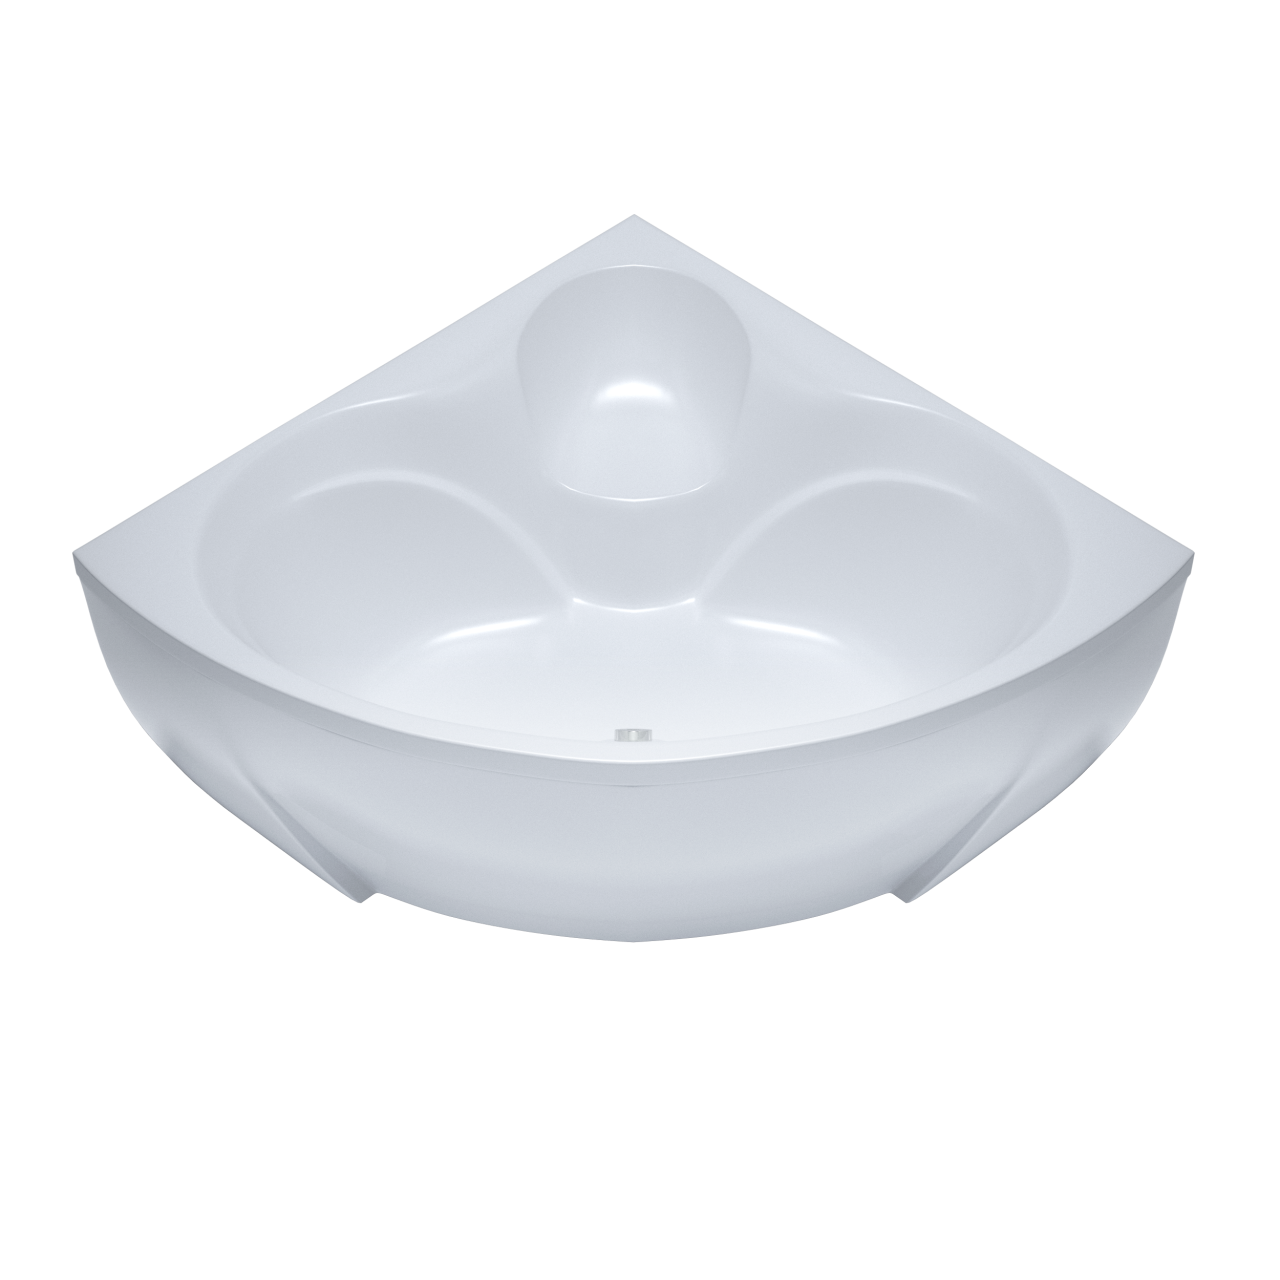 Акриловая ванна Triton Сабина 160x160 в комплекте с каркасом в интернет-магазине Sumom.kz